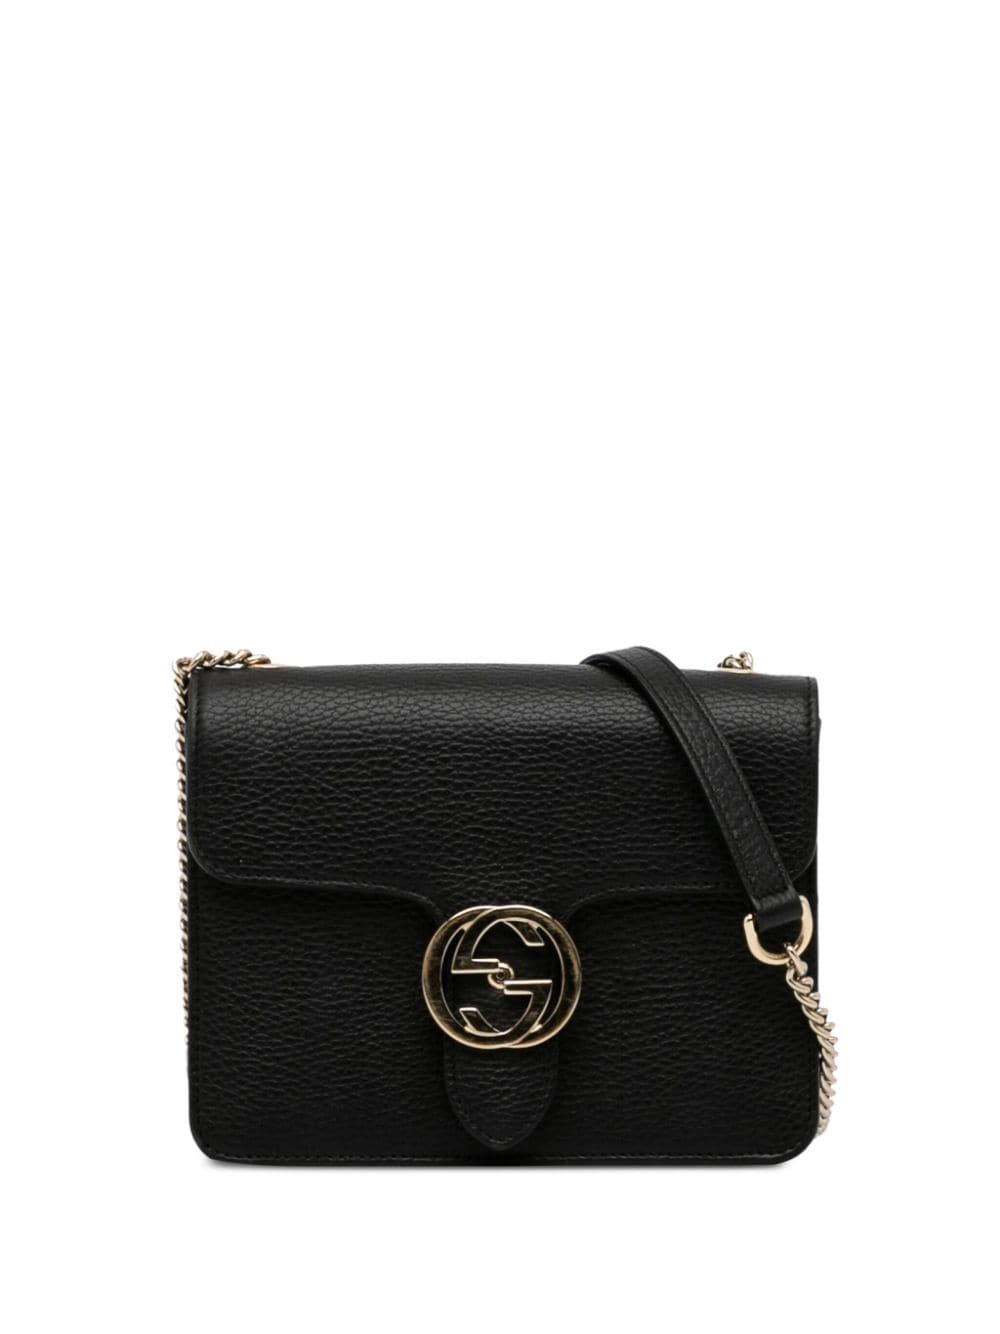 Gucci Interlocking GG Shoulder Bag w/ Tags